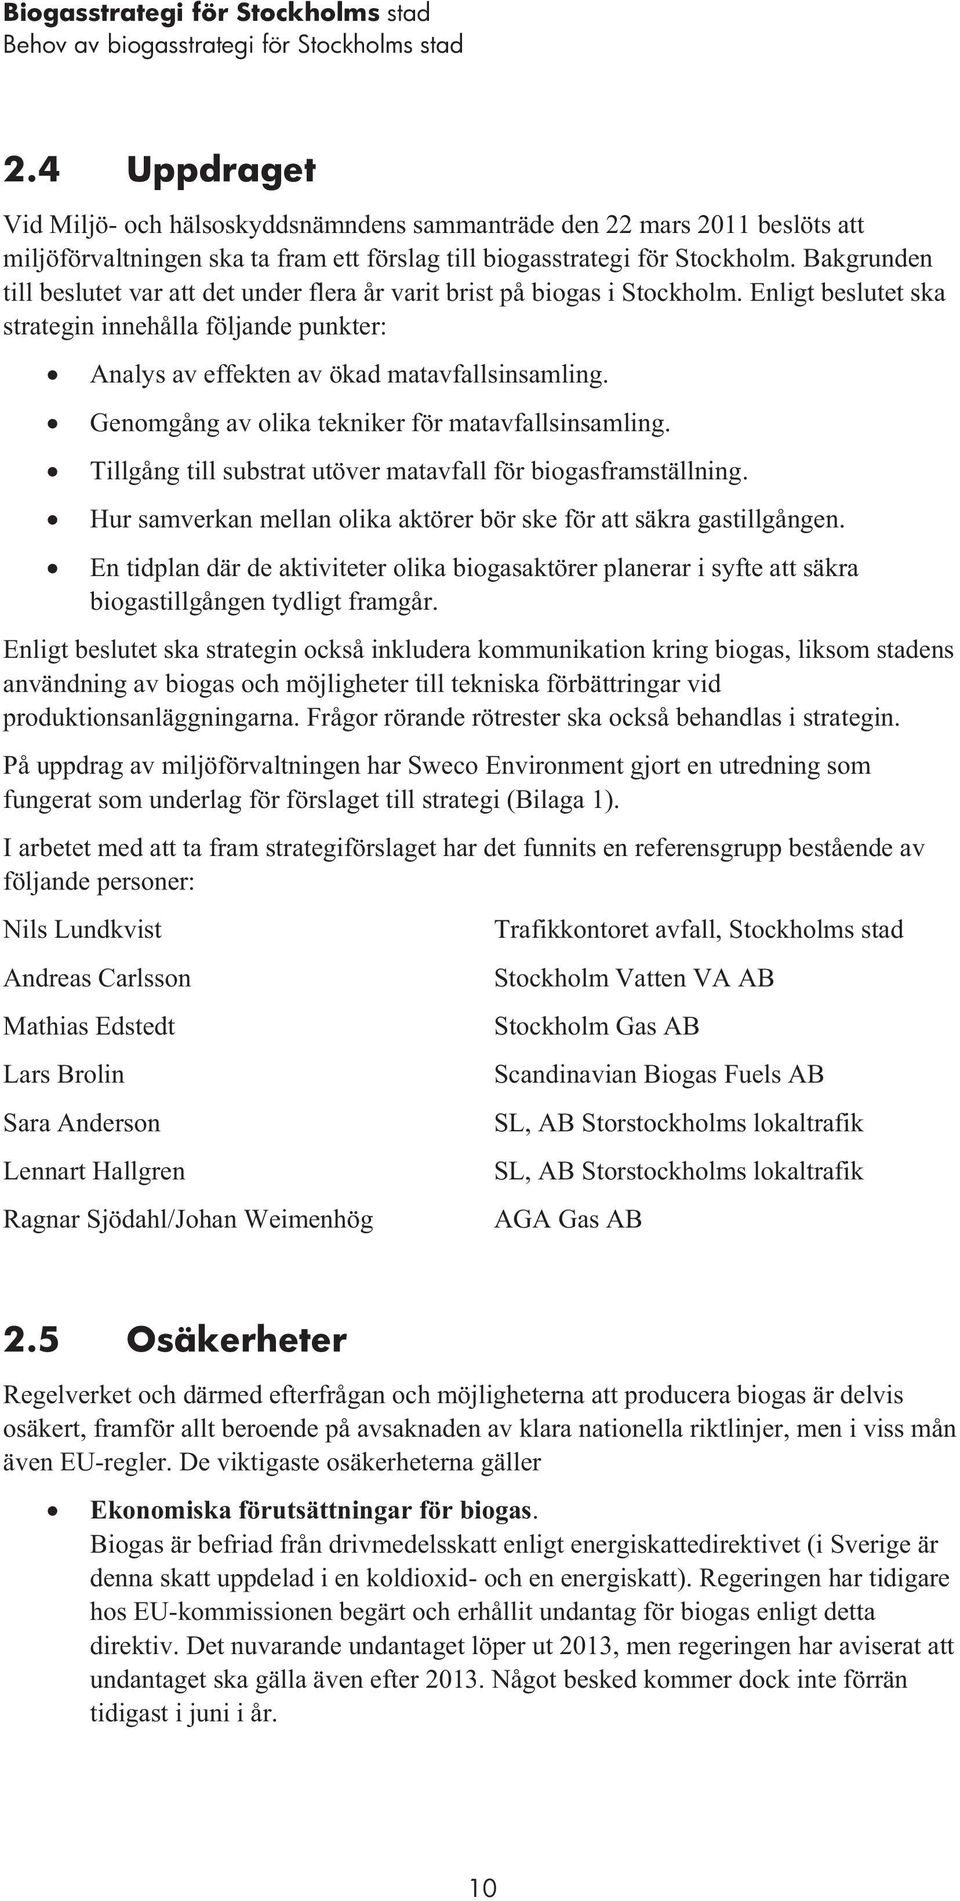 Bakgrunden till beslutet var att det under flera år varit brist på biogas i Stockholm. Enligt beslutet ska strategin innehålla följande punkter: Analys av effekten av ökad matavfallsinsamling.